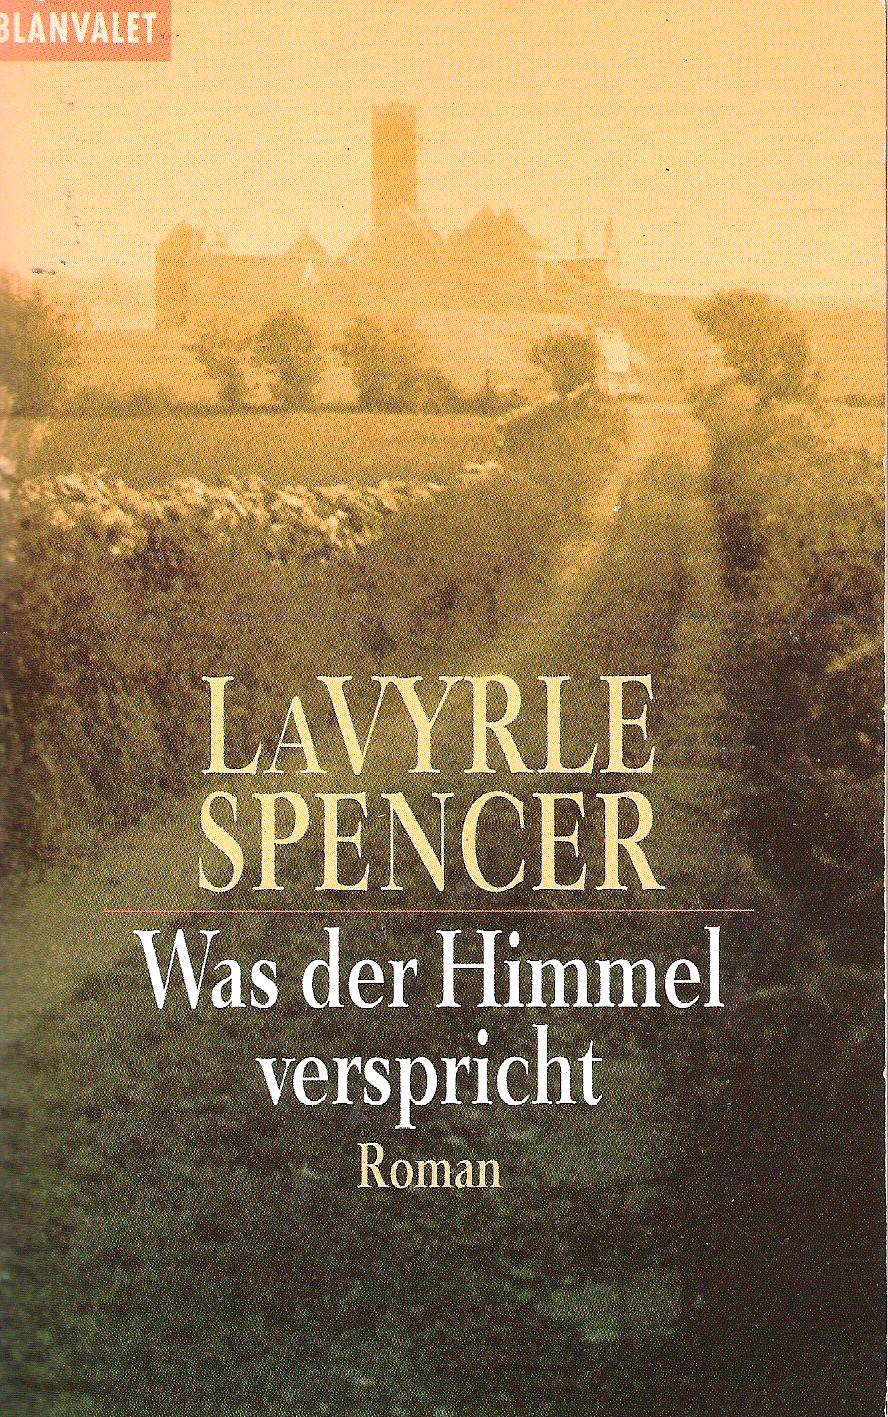 Lavyrle Spencer  Was Der Himmel Verspricht 